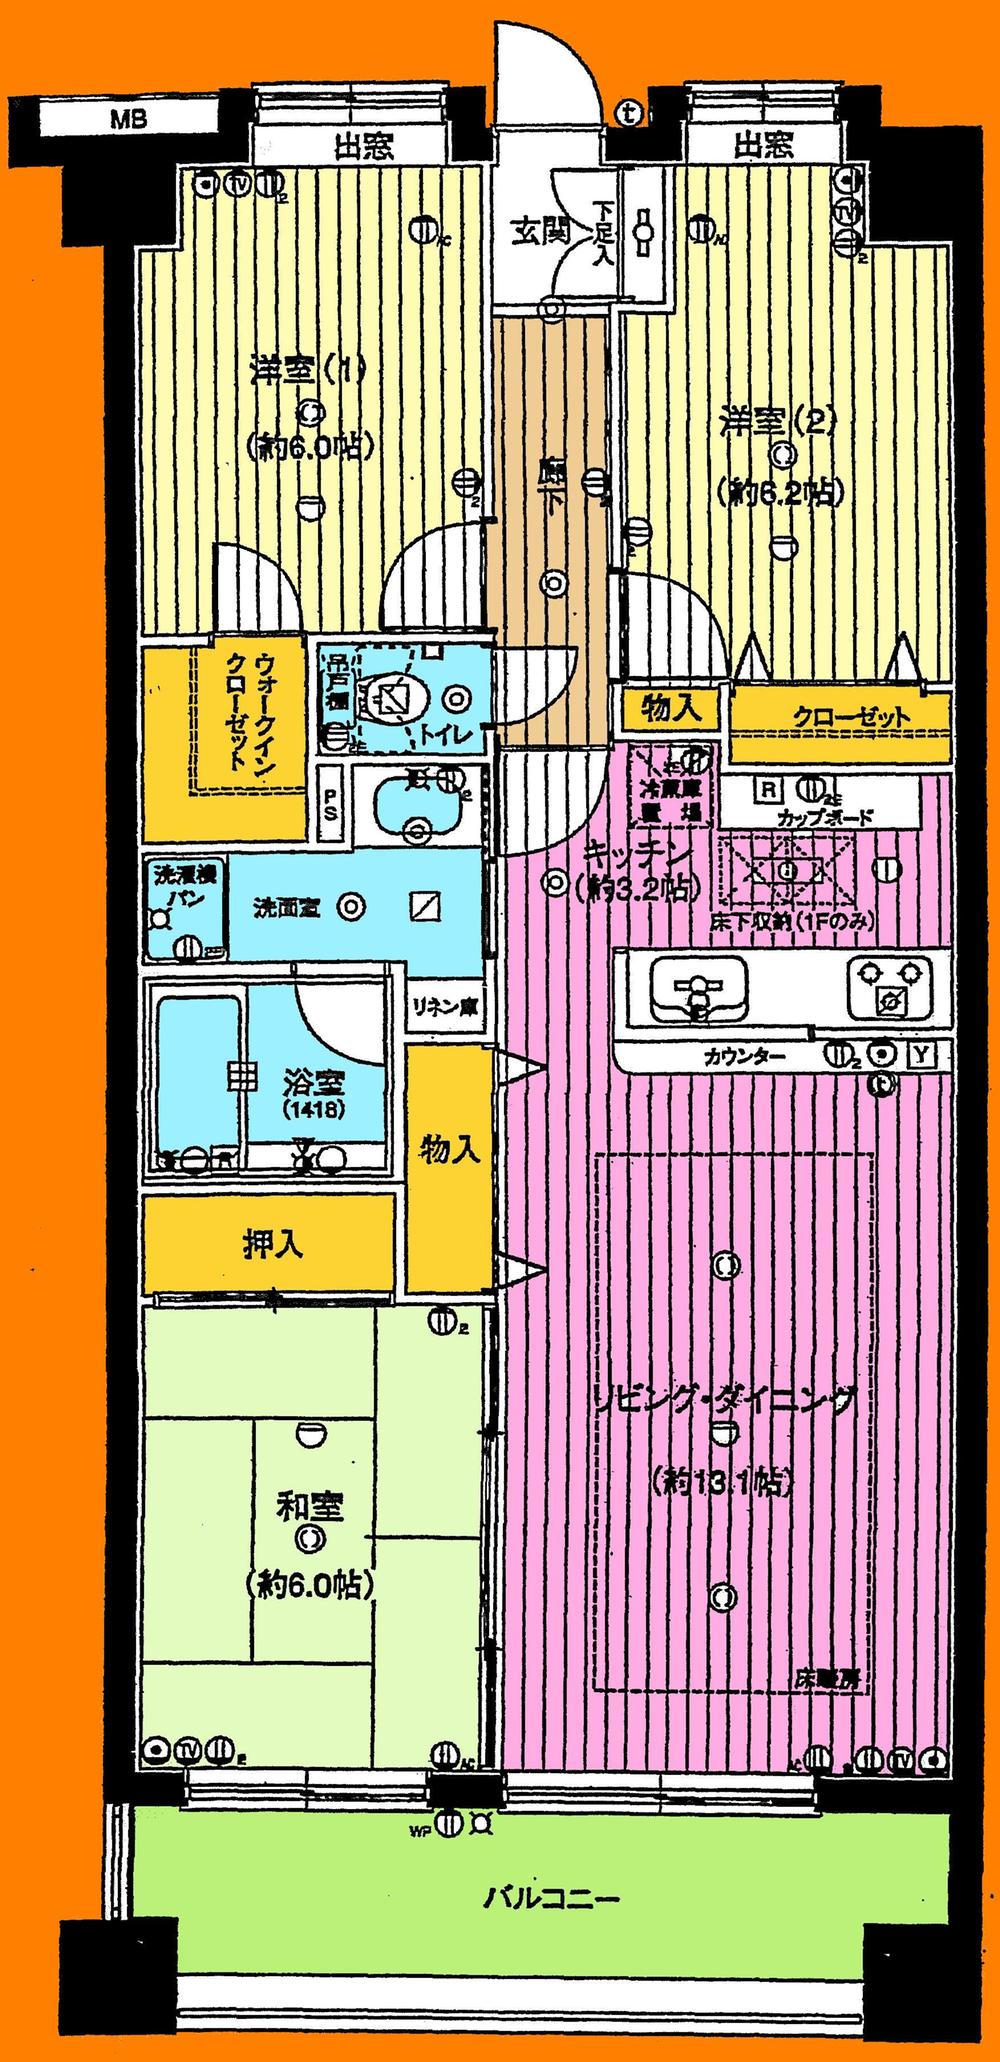 Floor plan. 3LDK + S (storeroom), Price 20.8 million yen, Occupied area 78.57 sq m , Balcony area 9.4 sq m floor plan